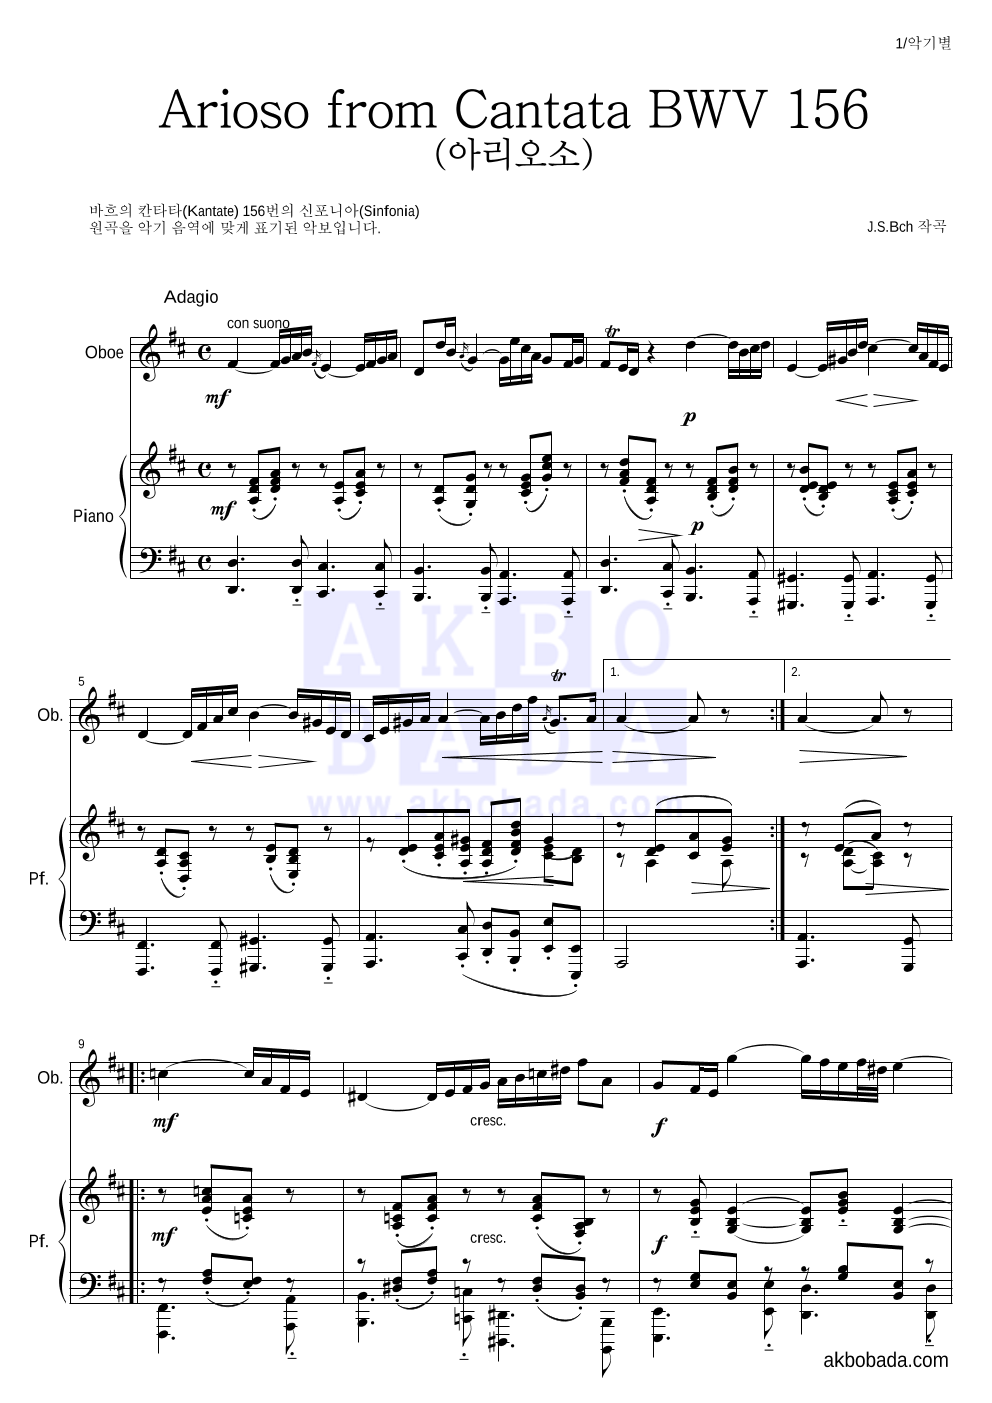 바흐 - Arioso from Cantata BWV 156 (아리오소) 오보에&피아노 악보 